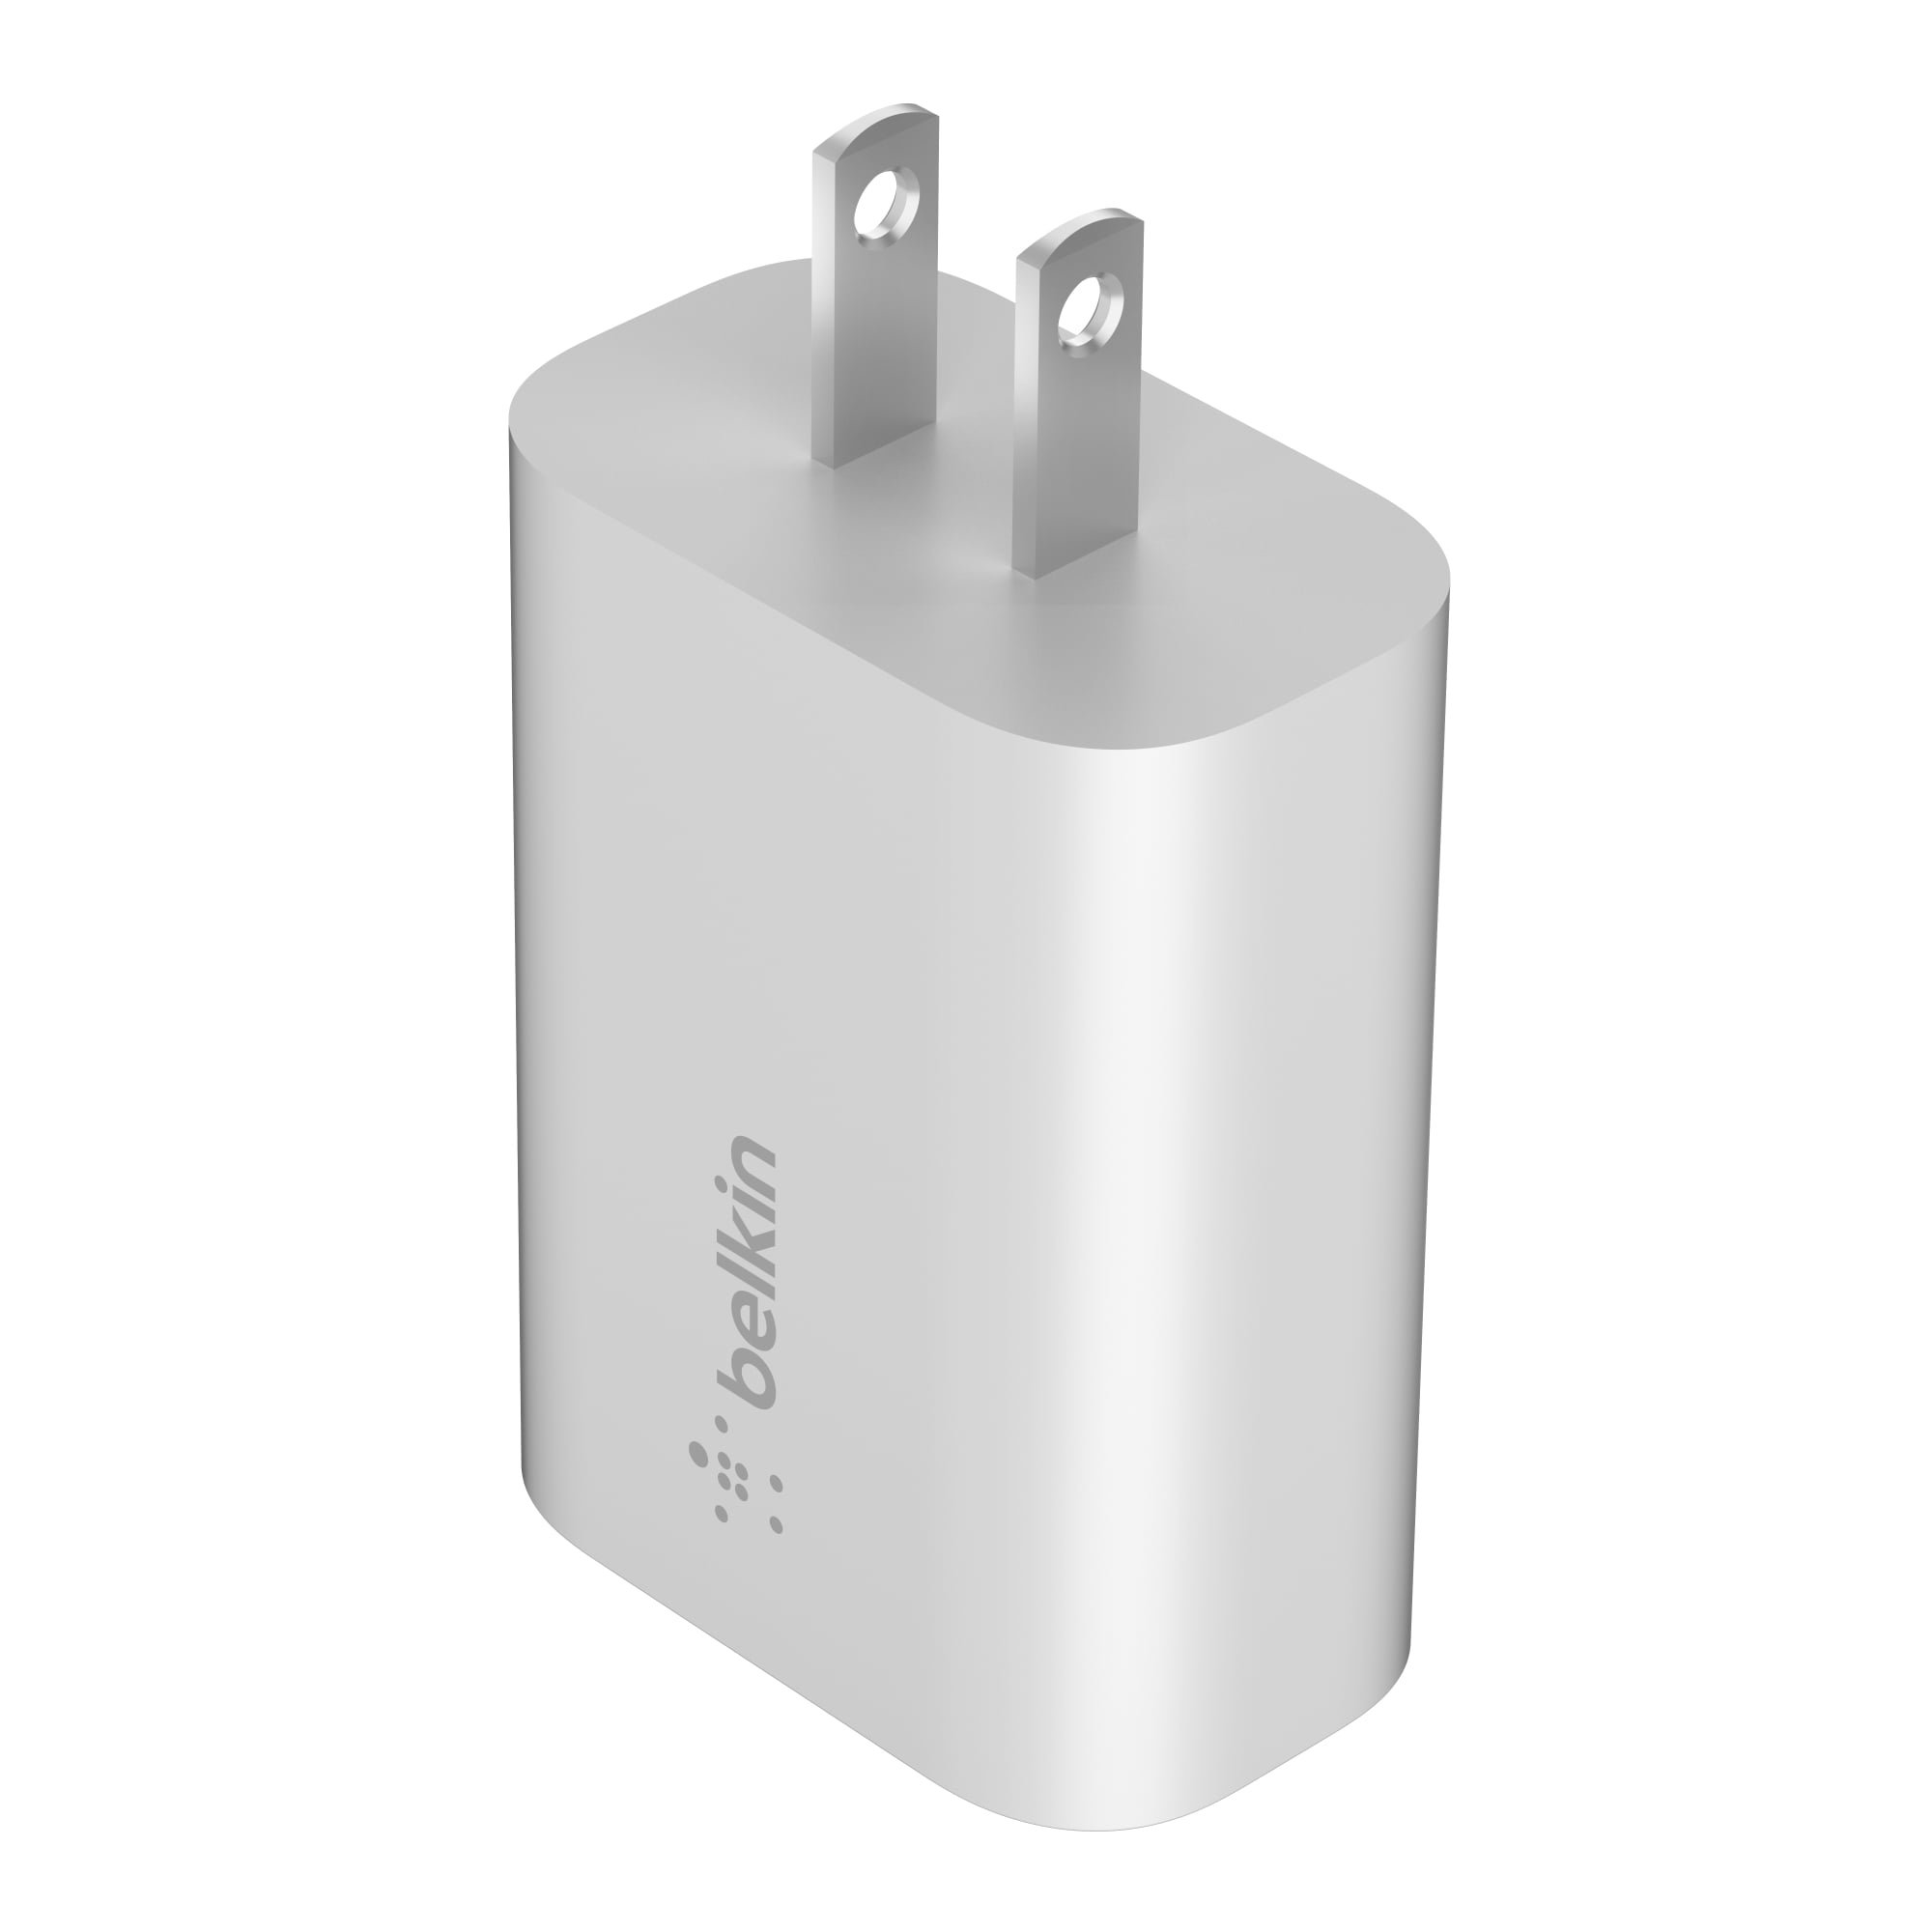 Chargeur Rapide iPhone [Apple MFi Certifié] 2 Ports USB Charger